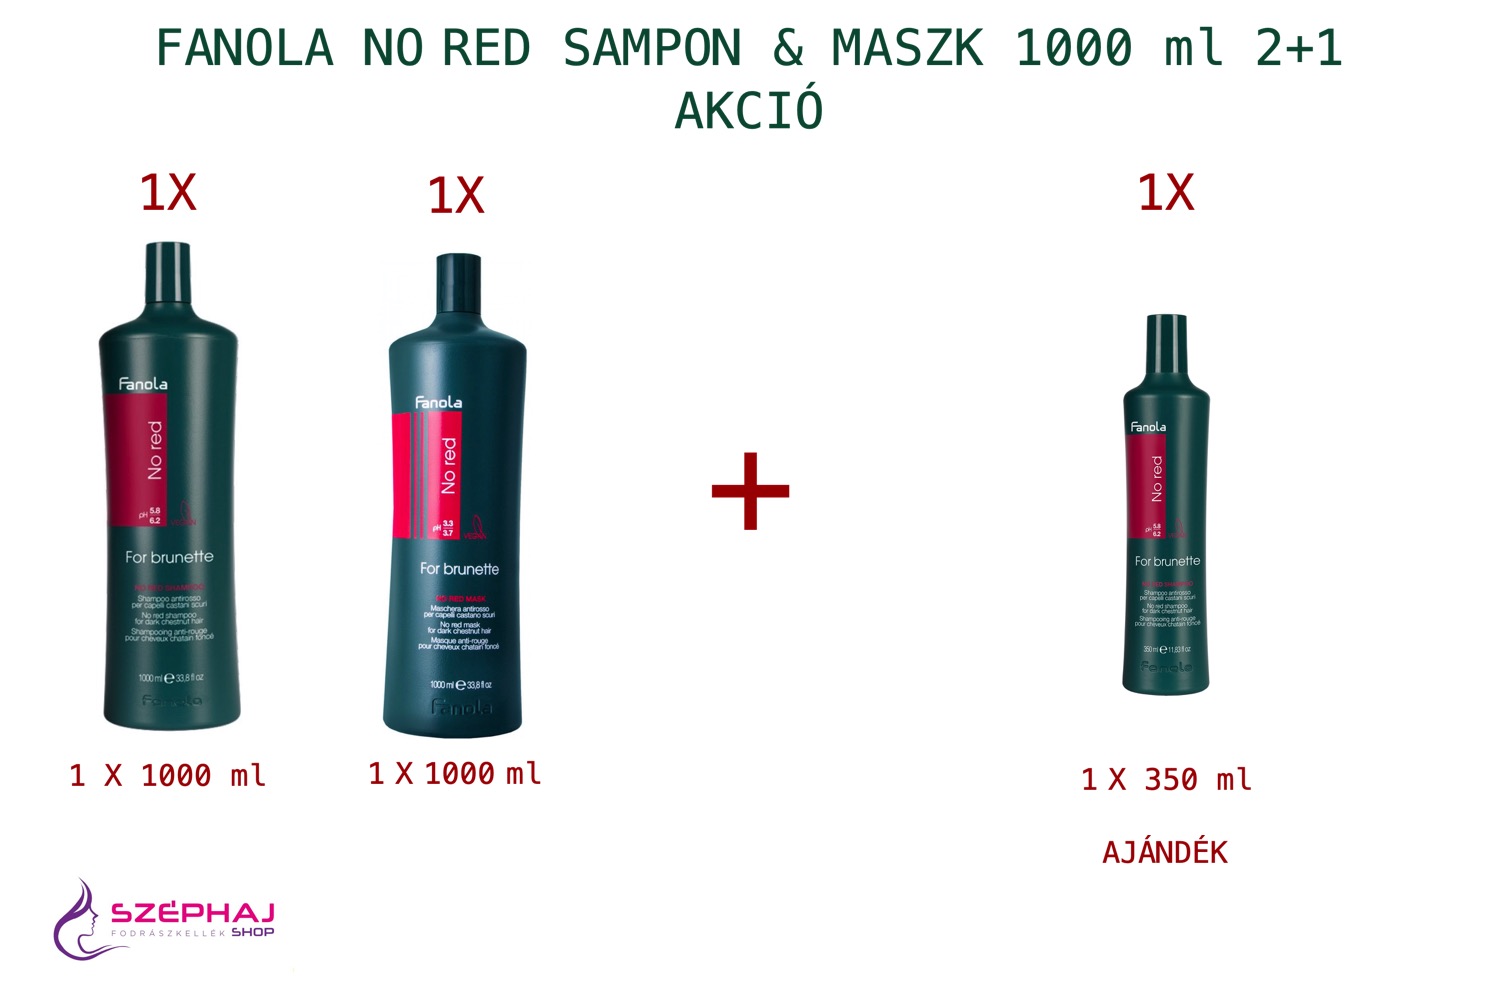 FANOLA No Red For Brunette Sampon & Maszk 1000 ml 2+1 AKCIÓ